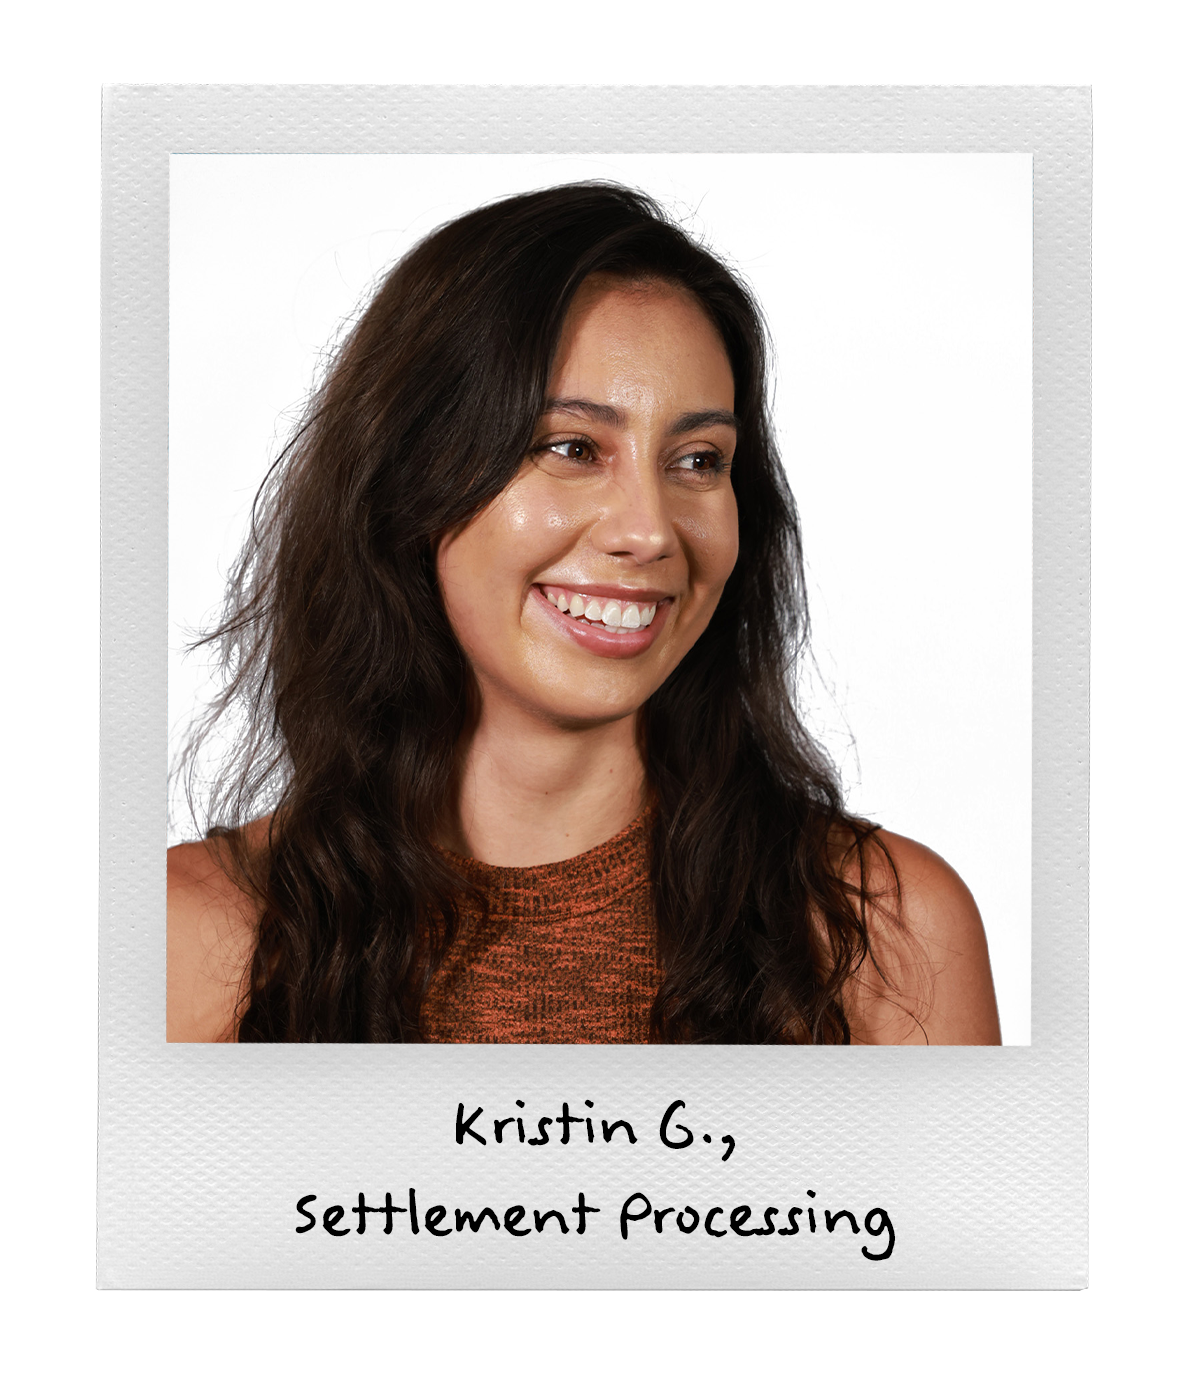 Kristin G., Settlement Processing